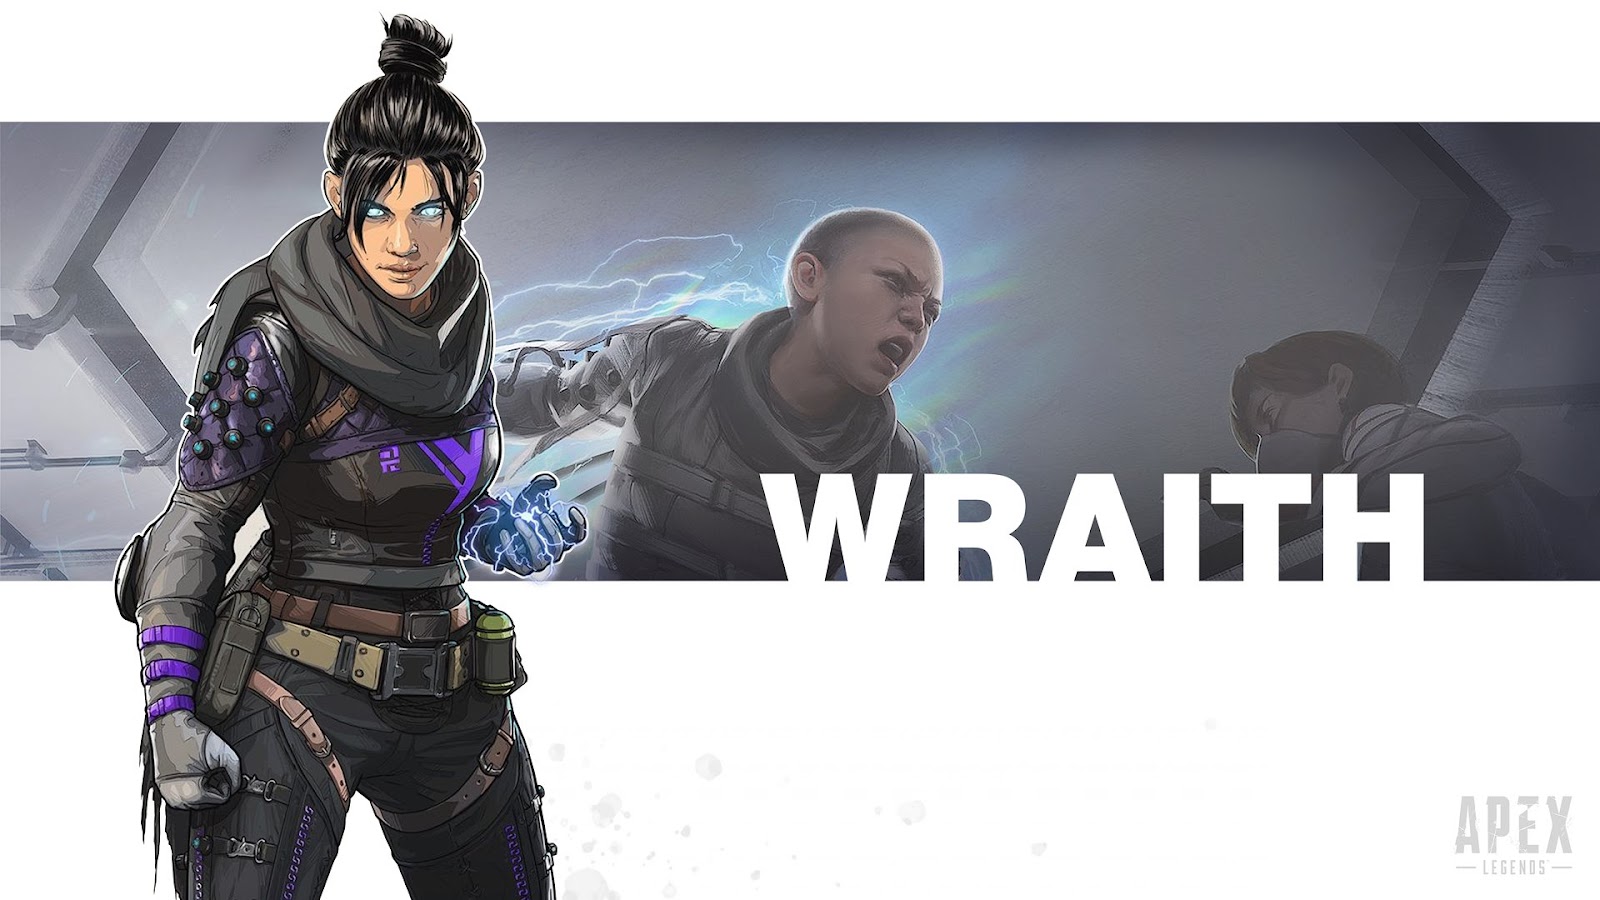 Картинки по запросу wraith apex legends